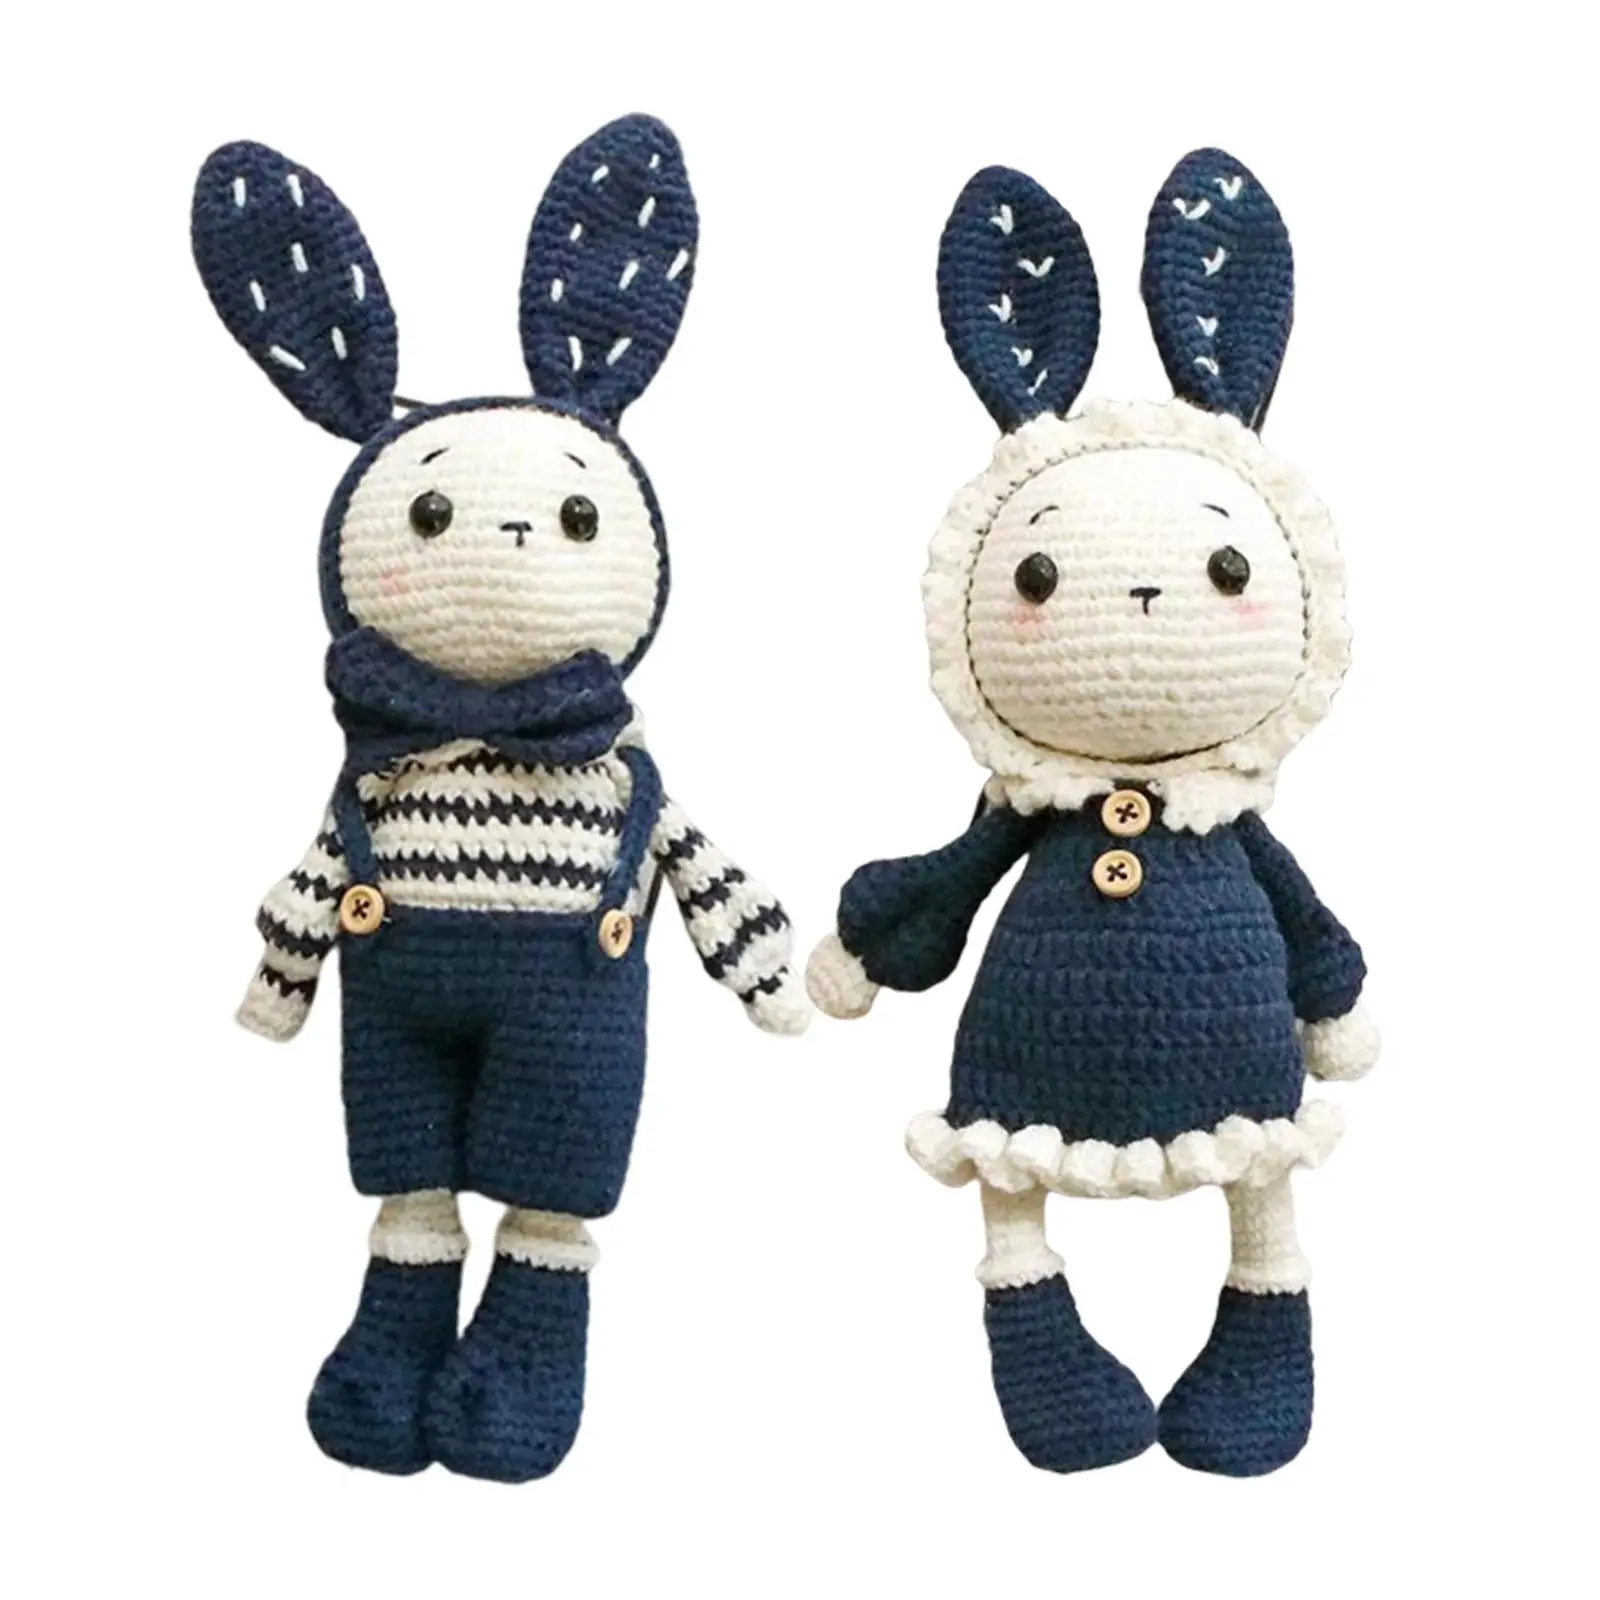 Complete Crochet for Beginner Cute Rabbits Crochet Craft Starter Pack All in